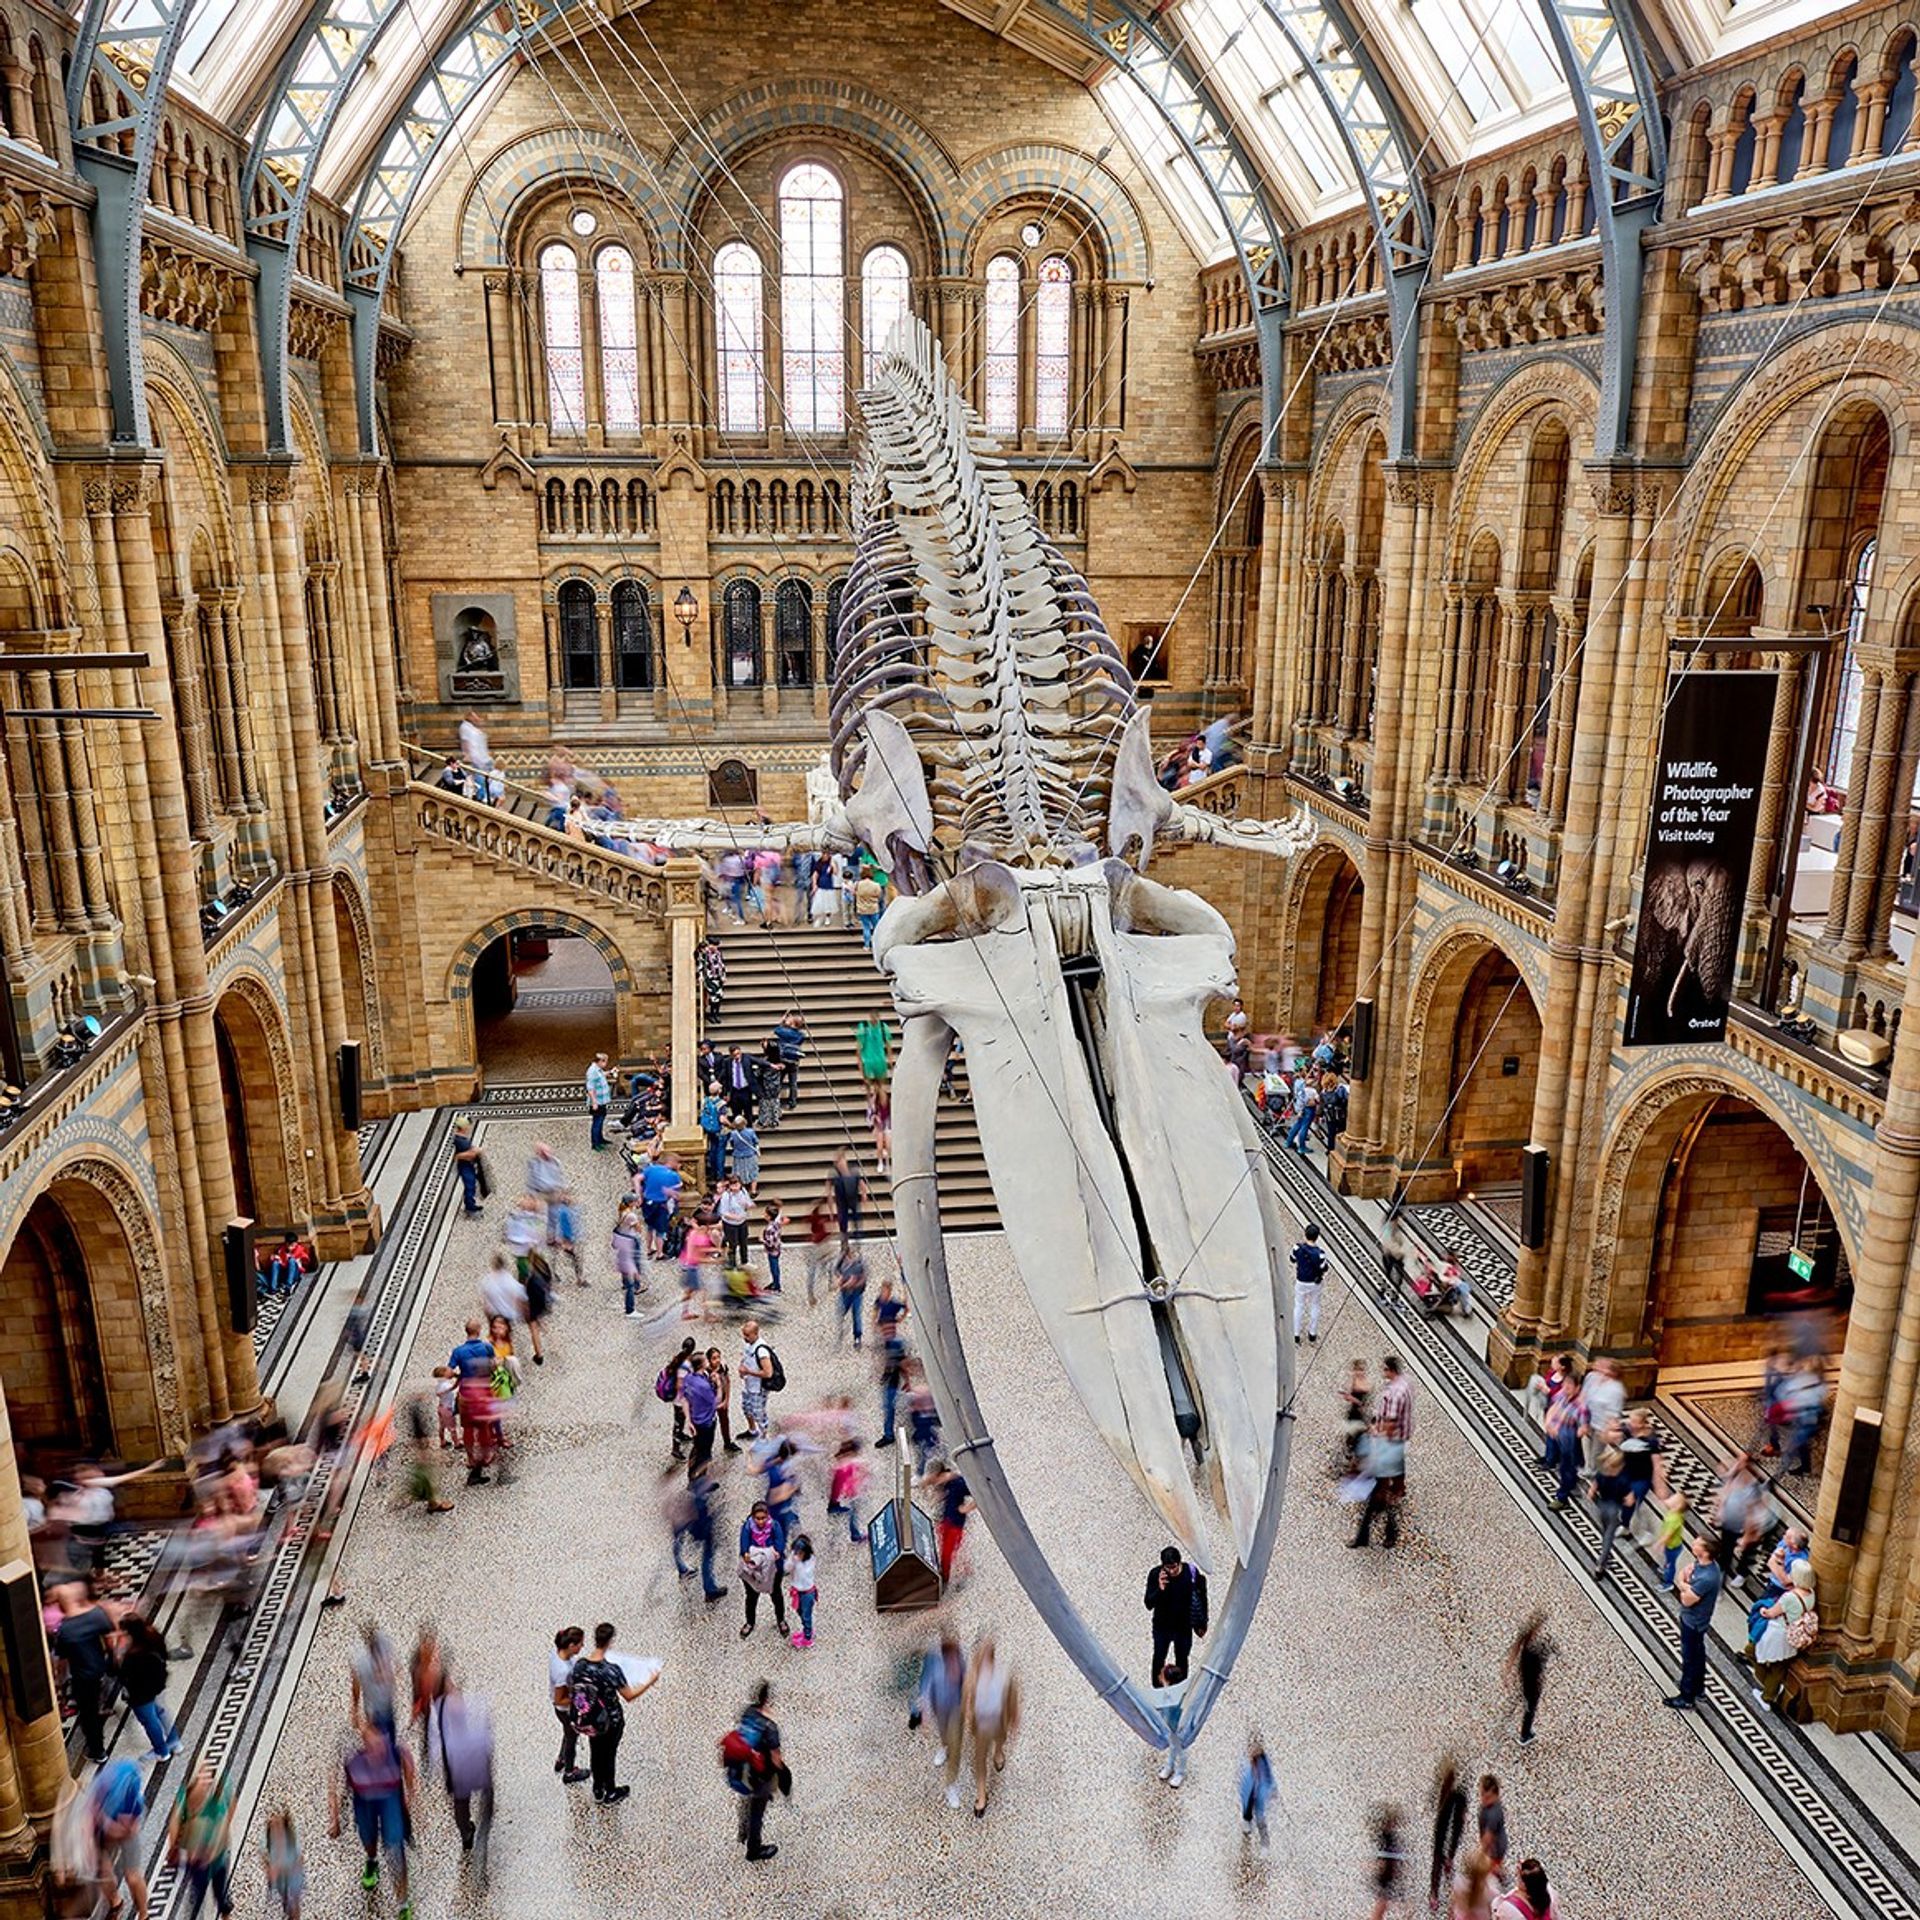 המוזיאון להיסטוריה של הטבע בלונדון סגר את שעריו עד ה-27 בדצמבר עקב עלייה במספר המקרים של הקורונה בעקבות זן האומיקרון

באדיבות נאמני מוזיאון הטבע


